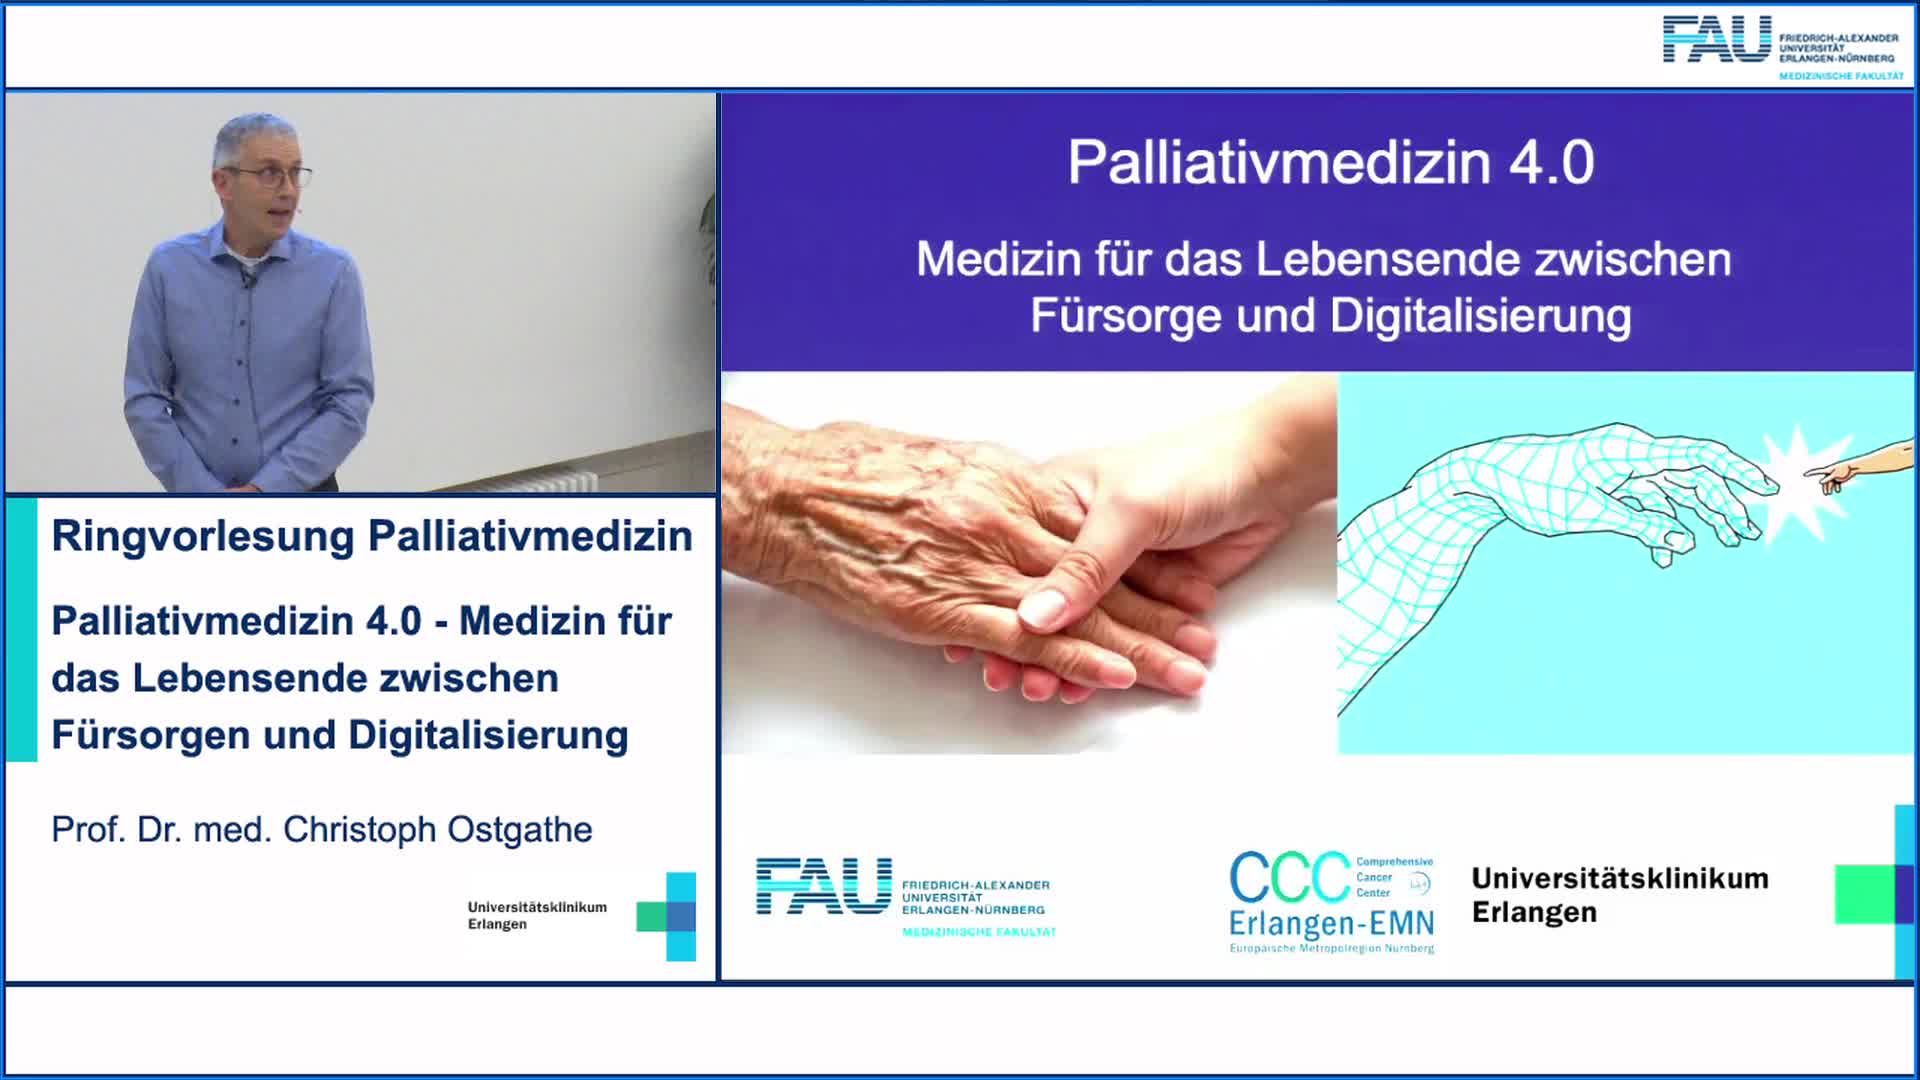 Palliativmedizin 4.0 - Medizin für das Lebensende zwischen Fürsorgen und Digitalisierung preview image